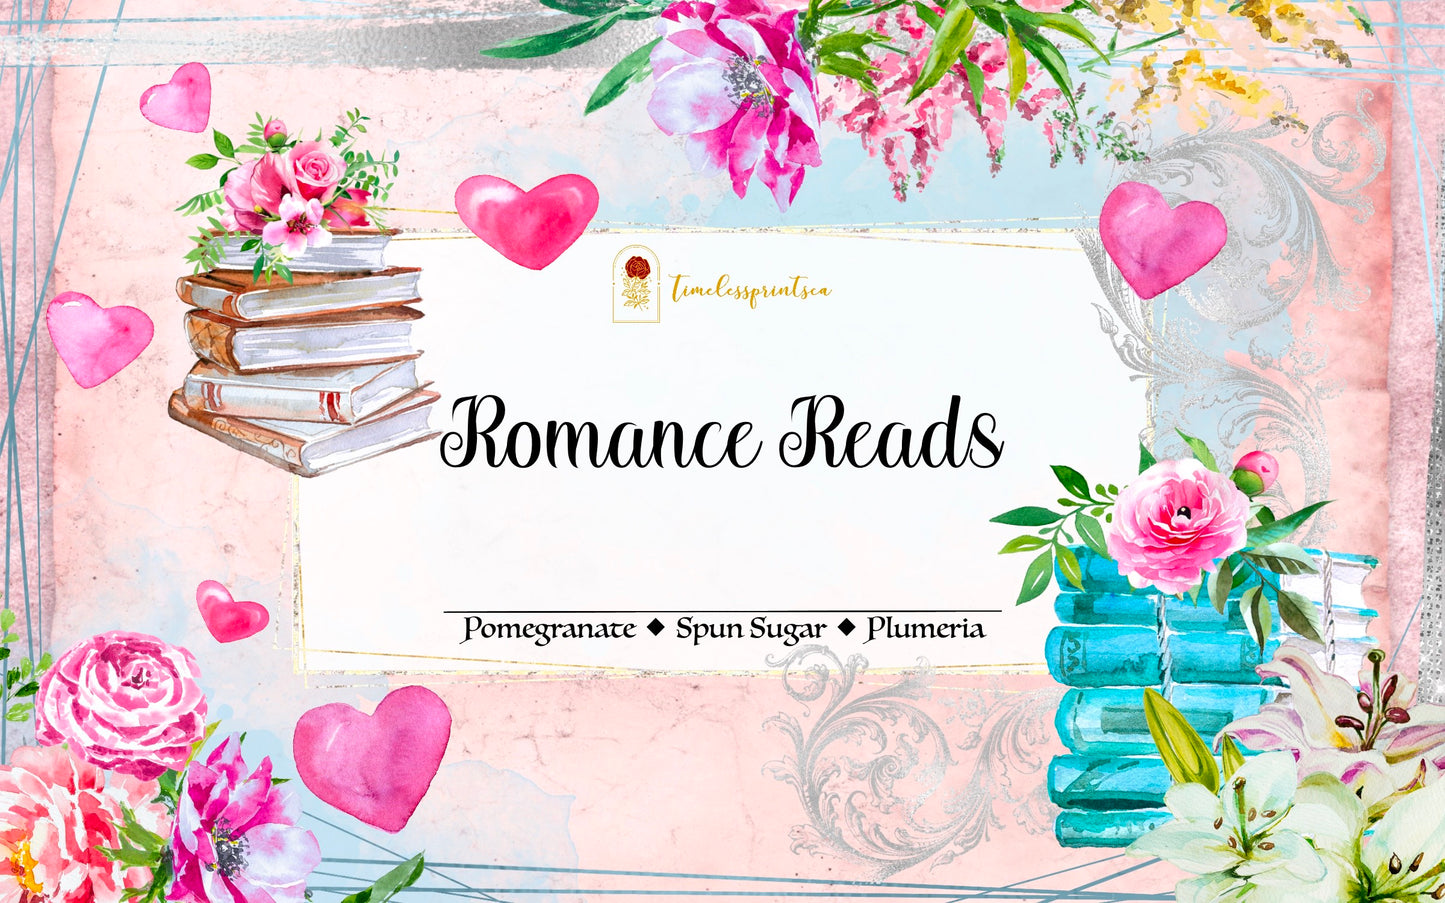 Romance Reads